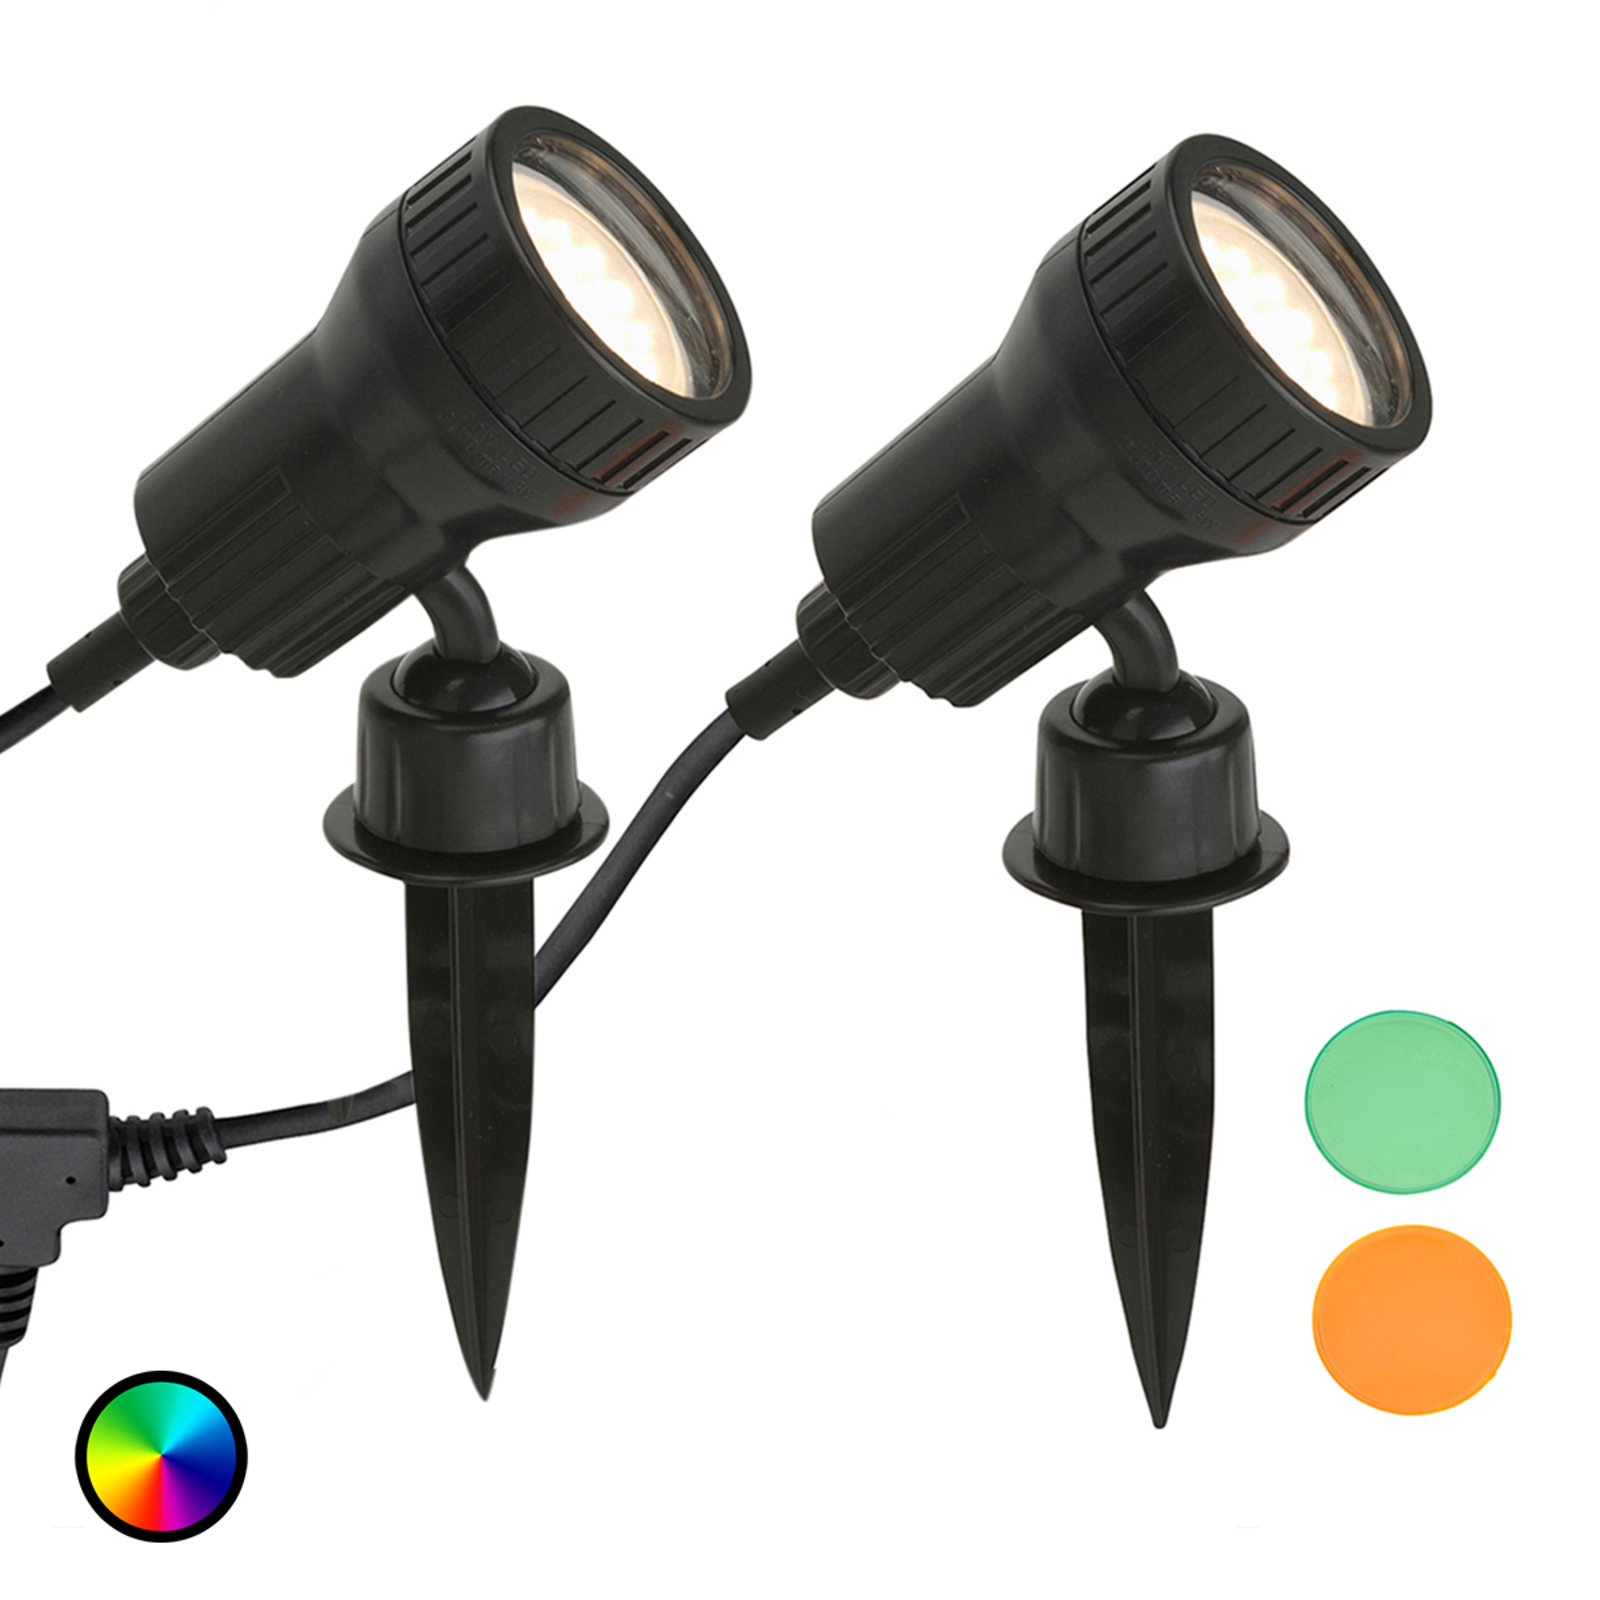 2 kpl:n sarja - LED-maapiikkivalo Terra värisuodattimilla varustettuna